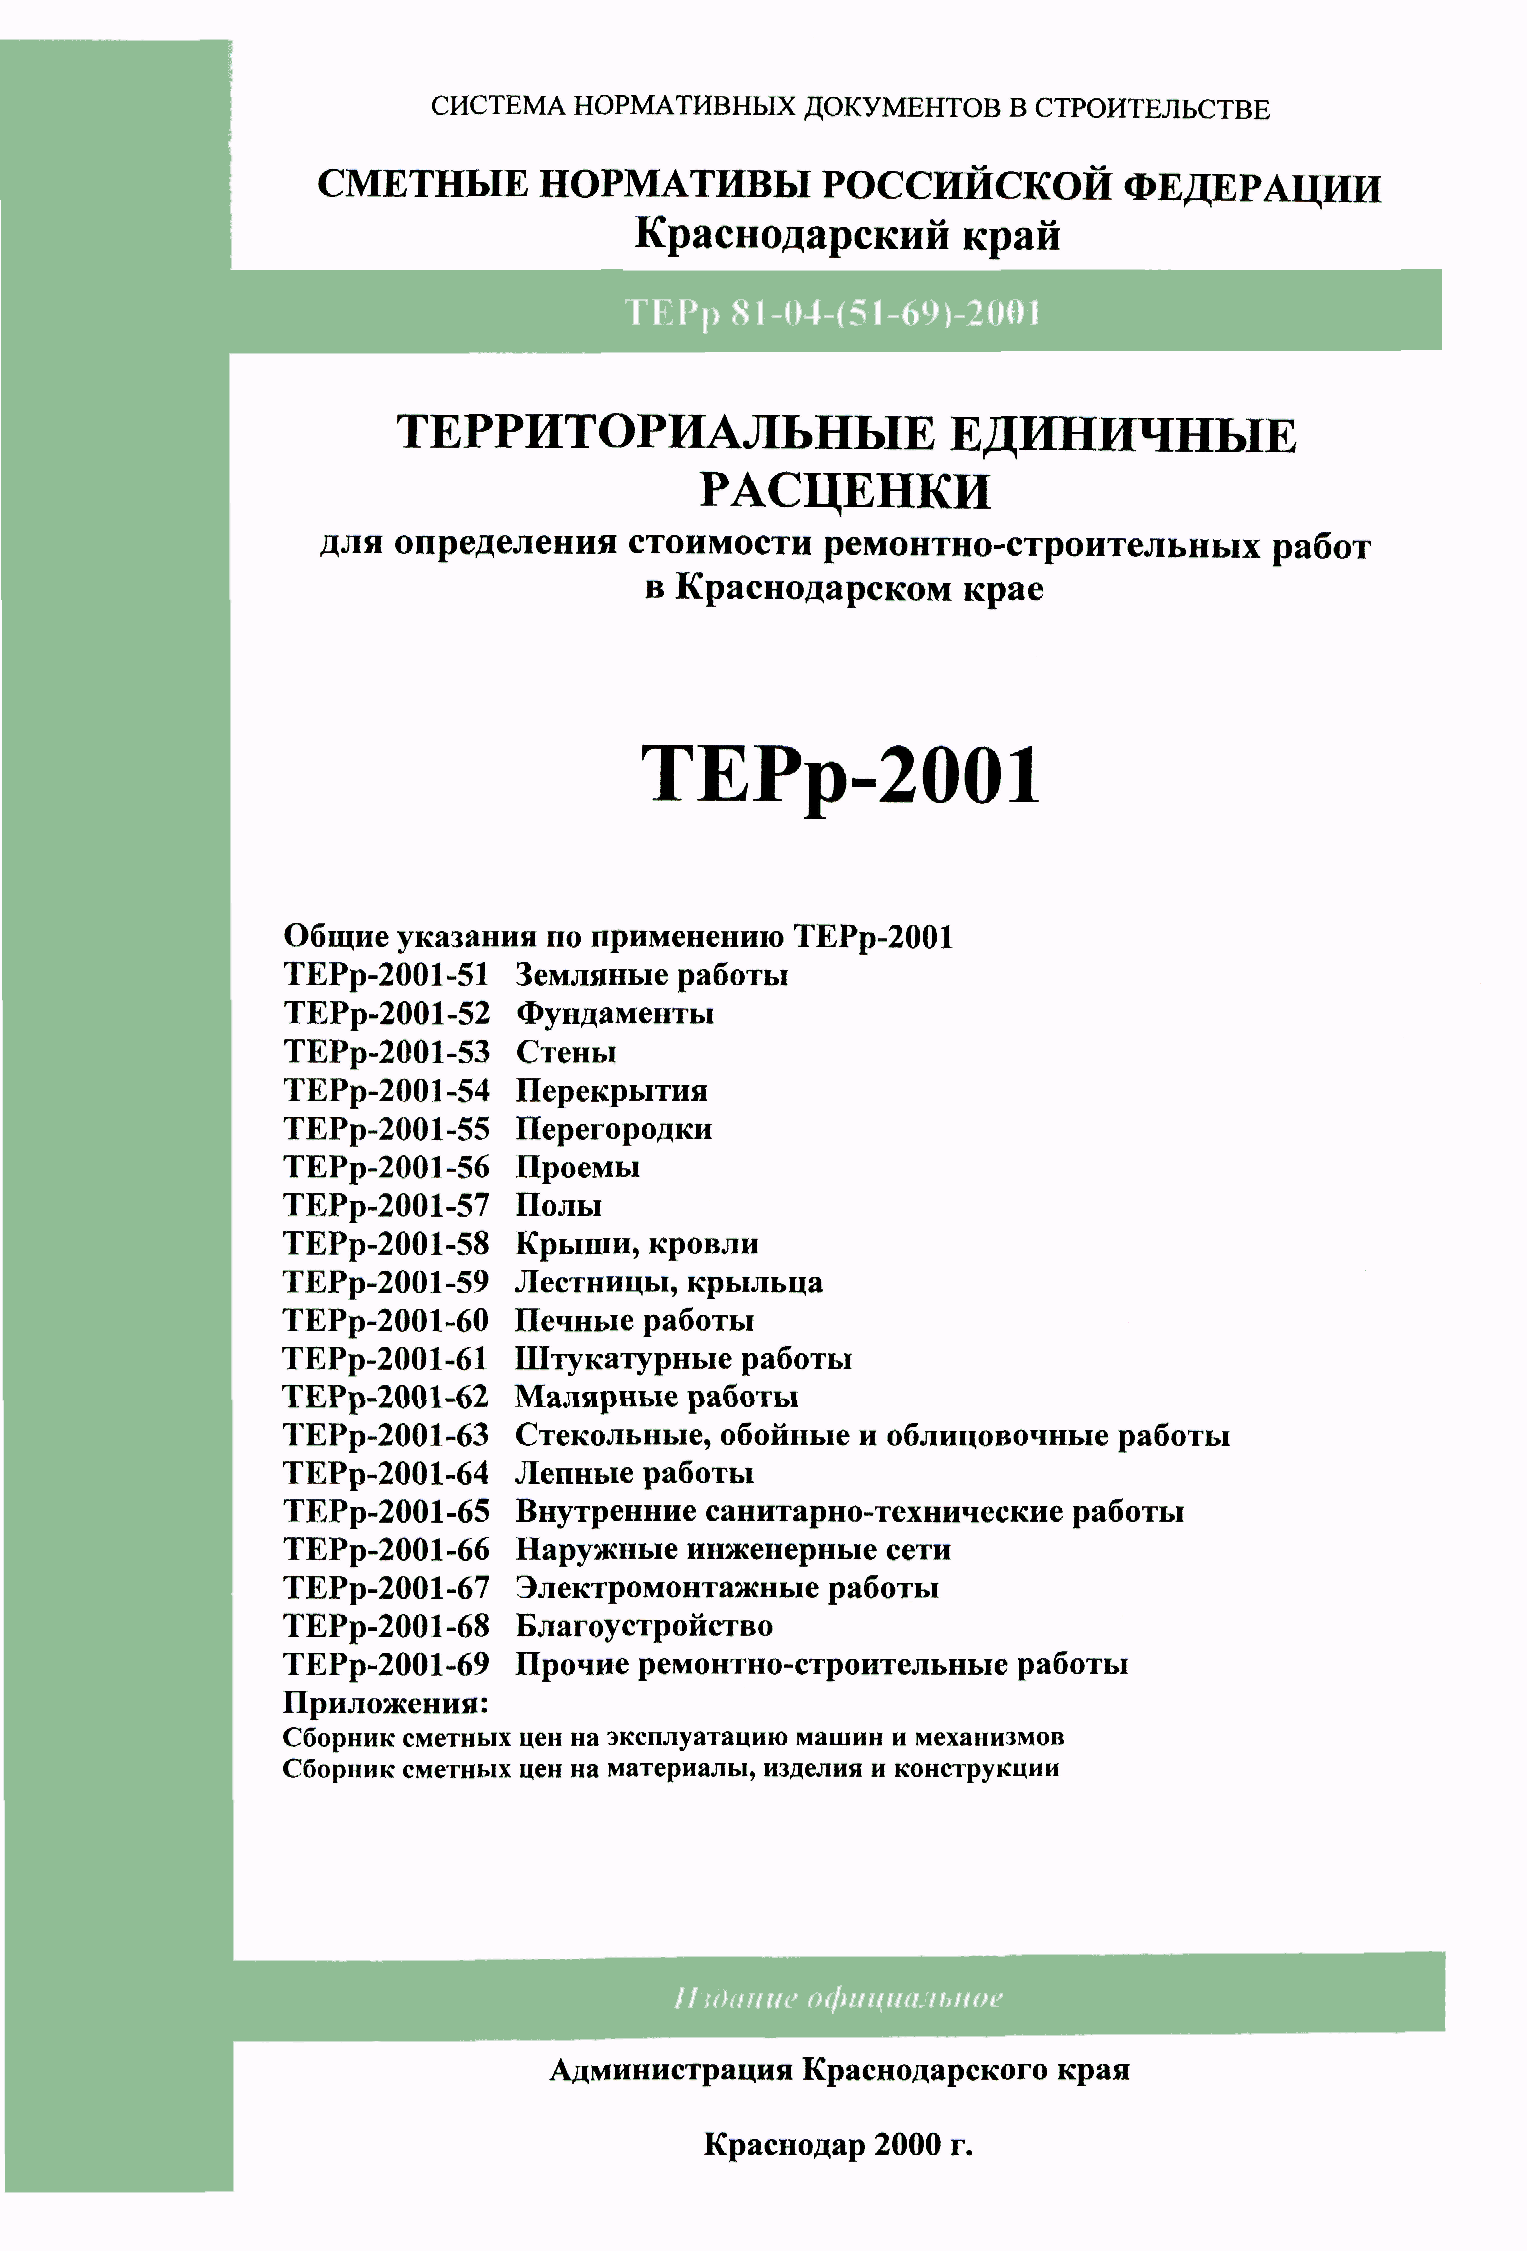 ТЕРр Краснодарского края 2001-60